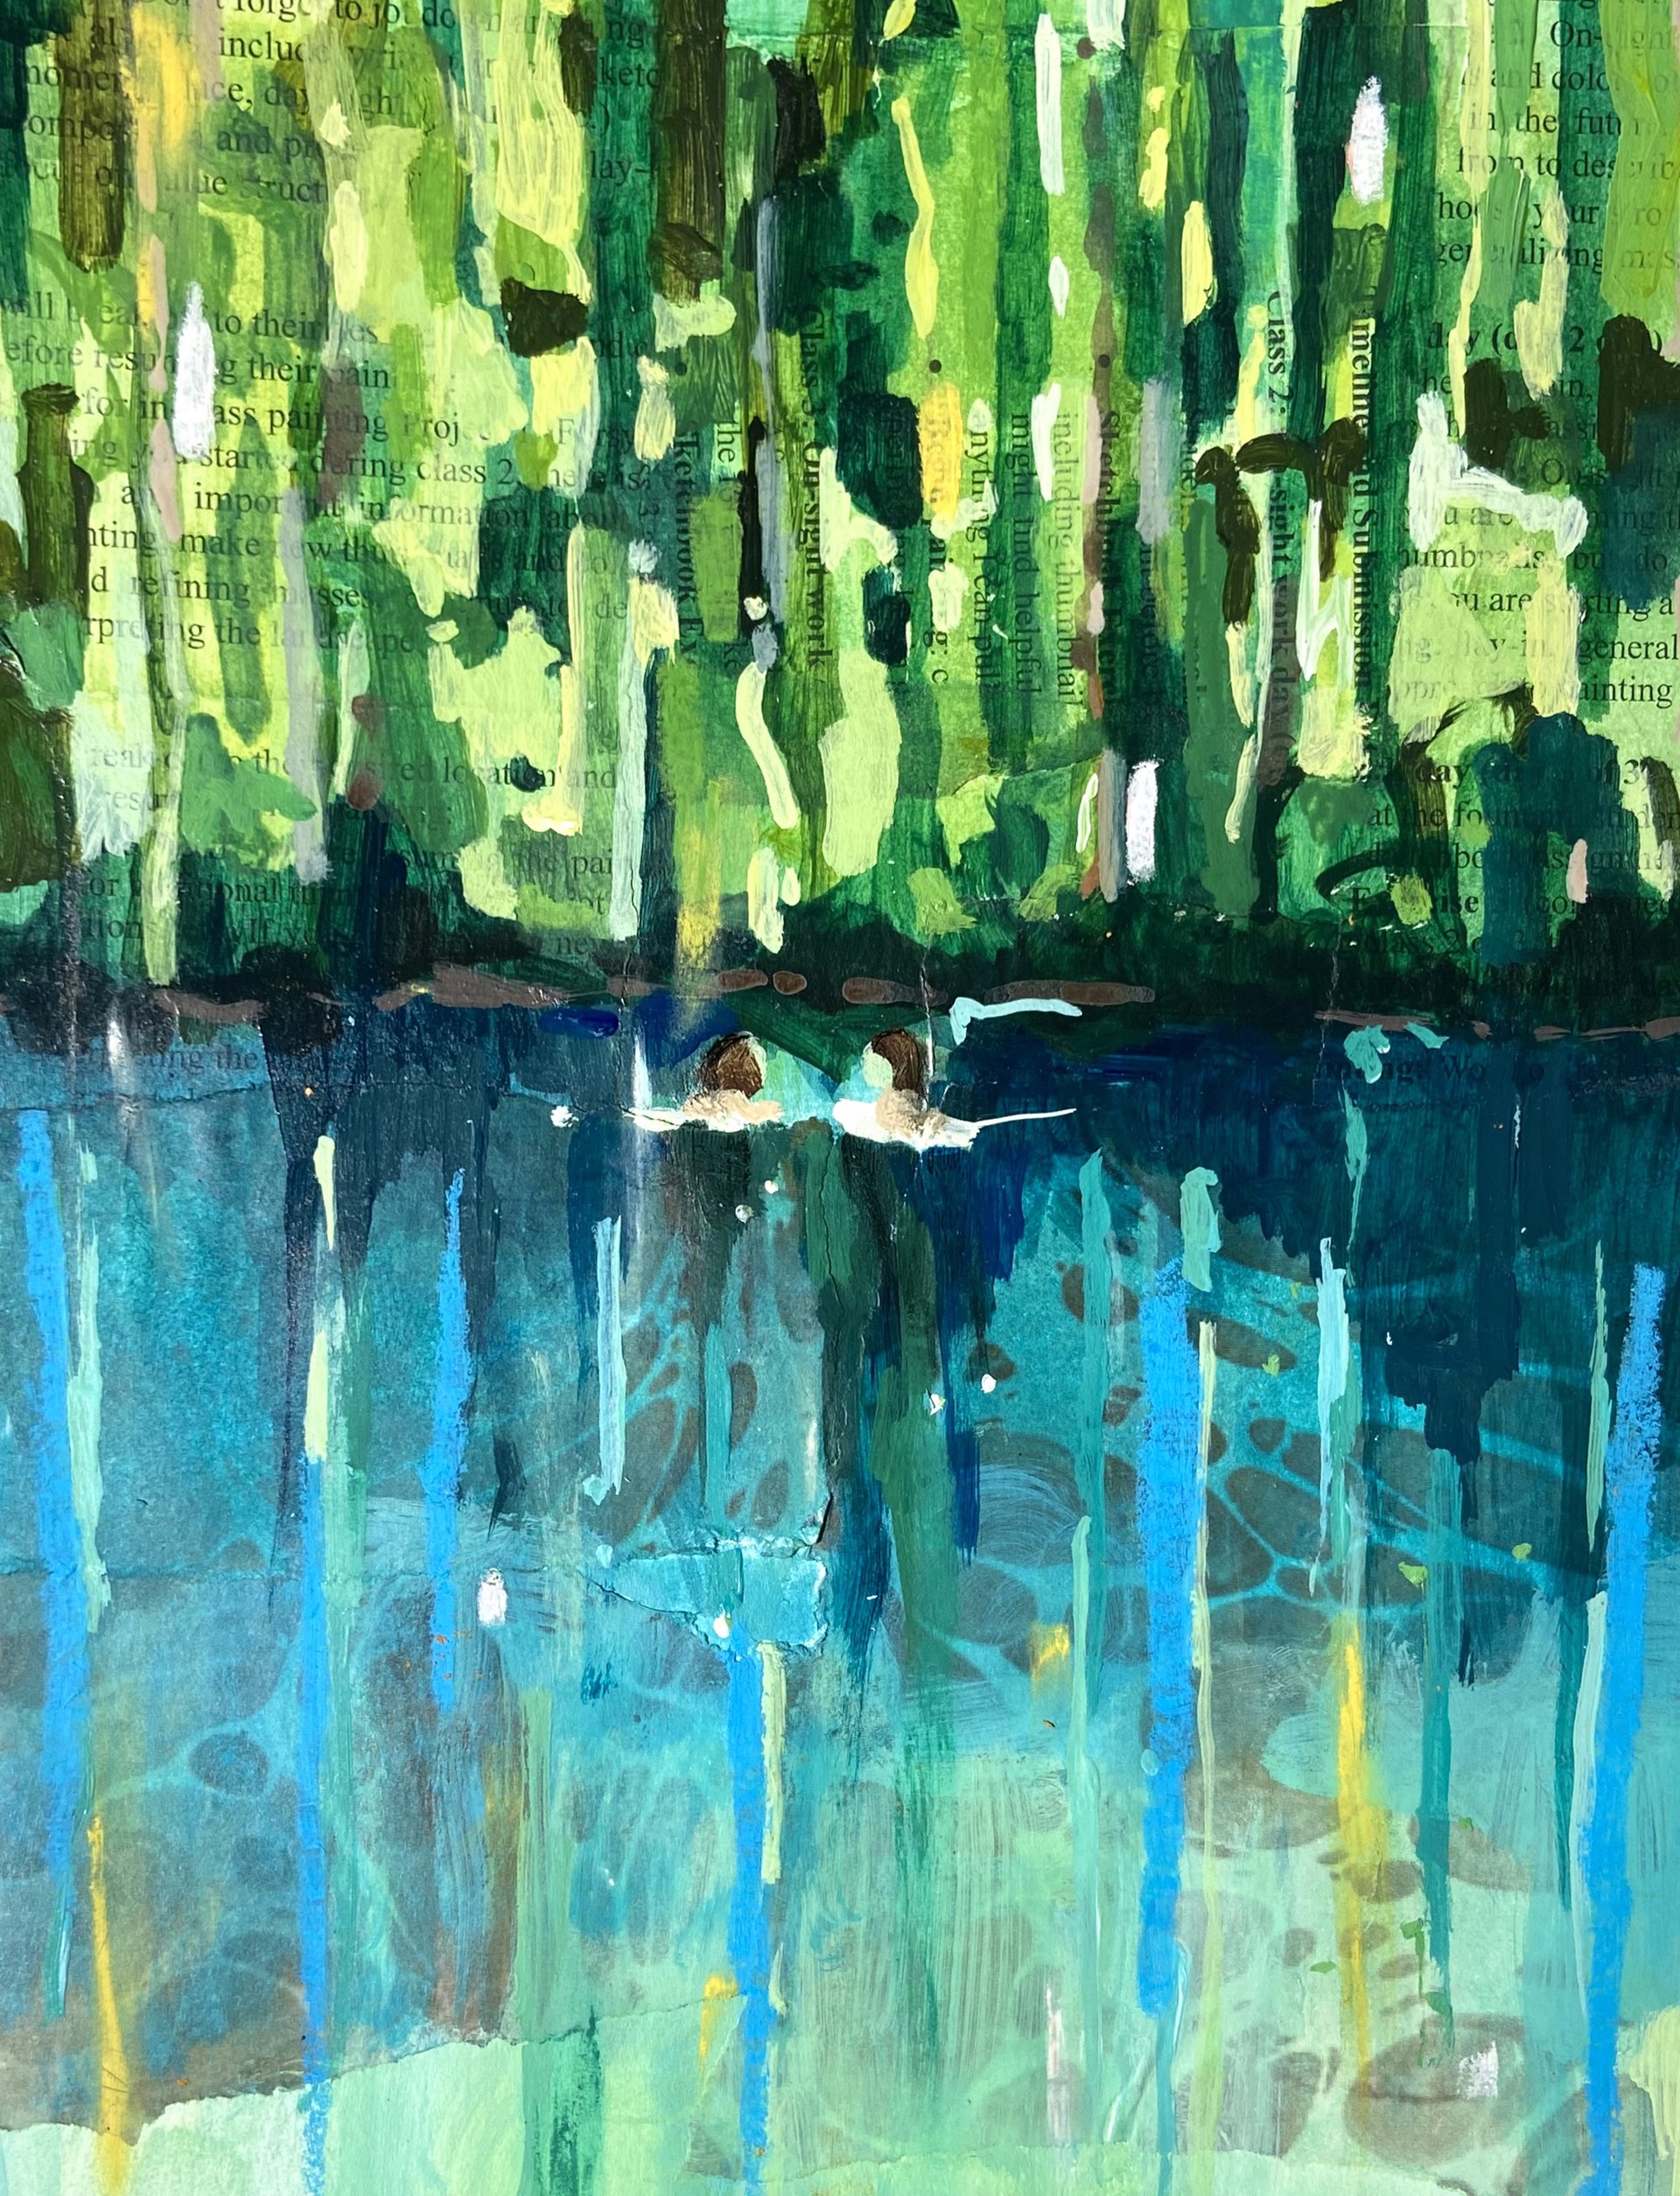 River Dream by Talia Sullivan